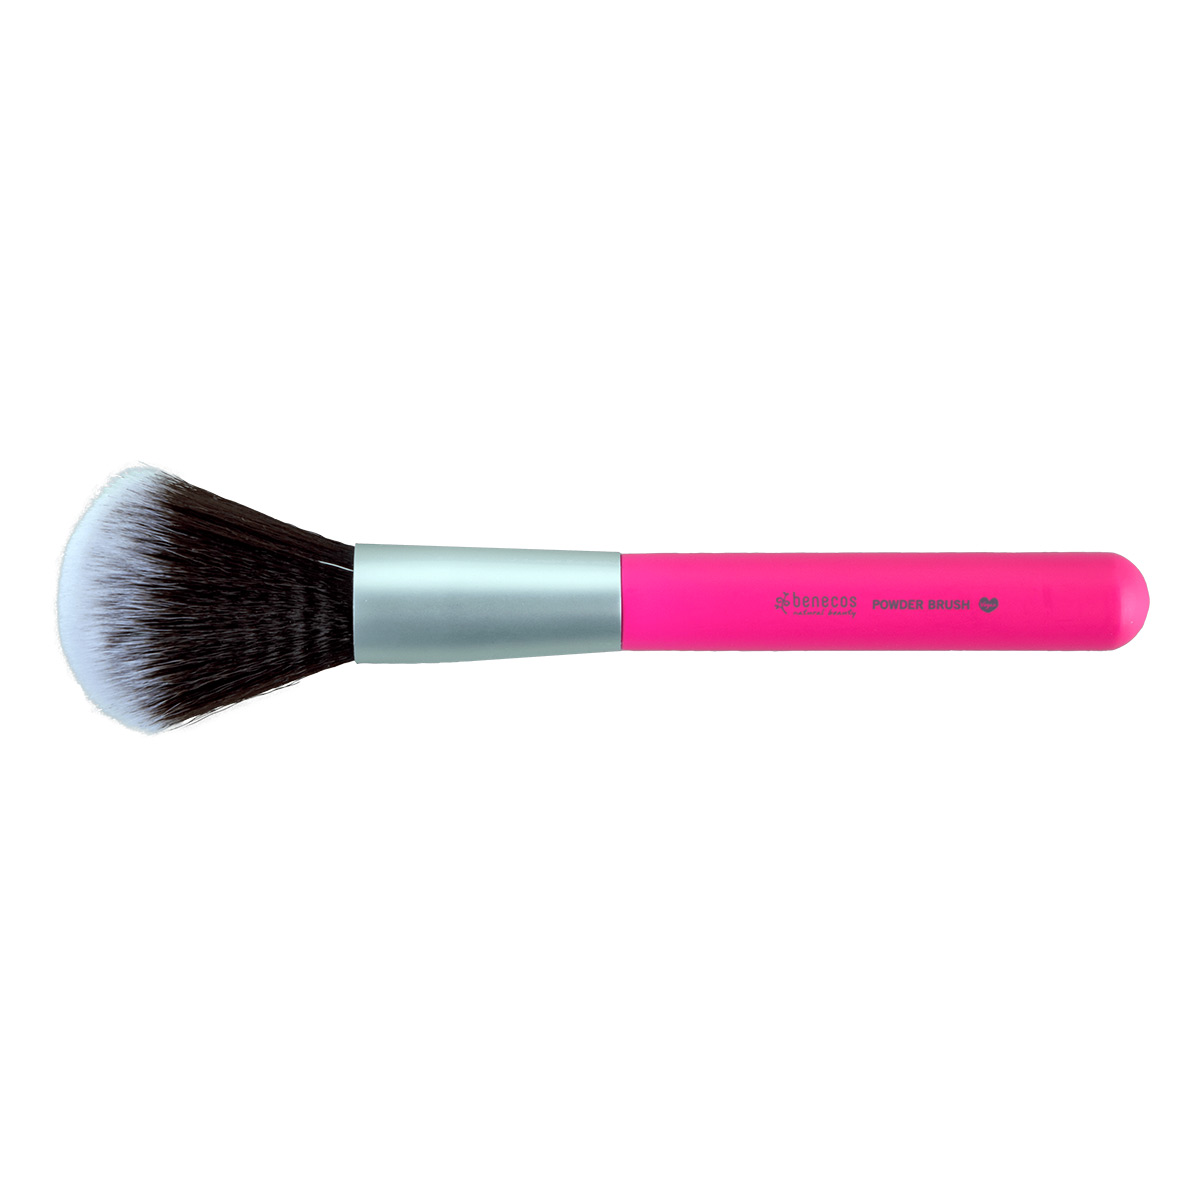 Benecos Powder Brush - Pink Handle